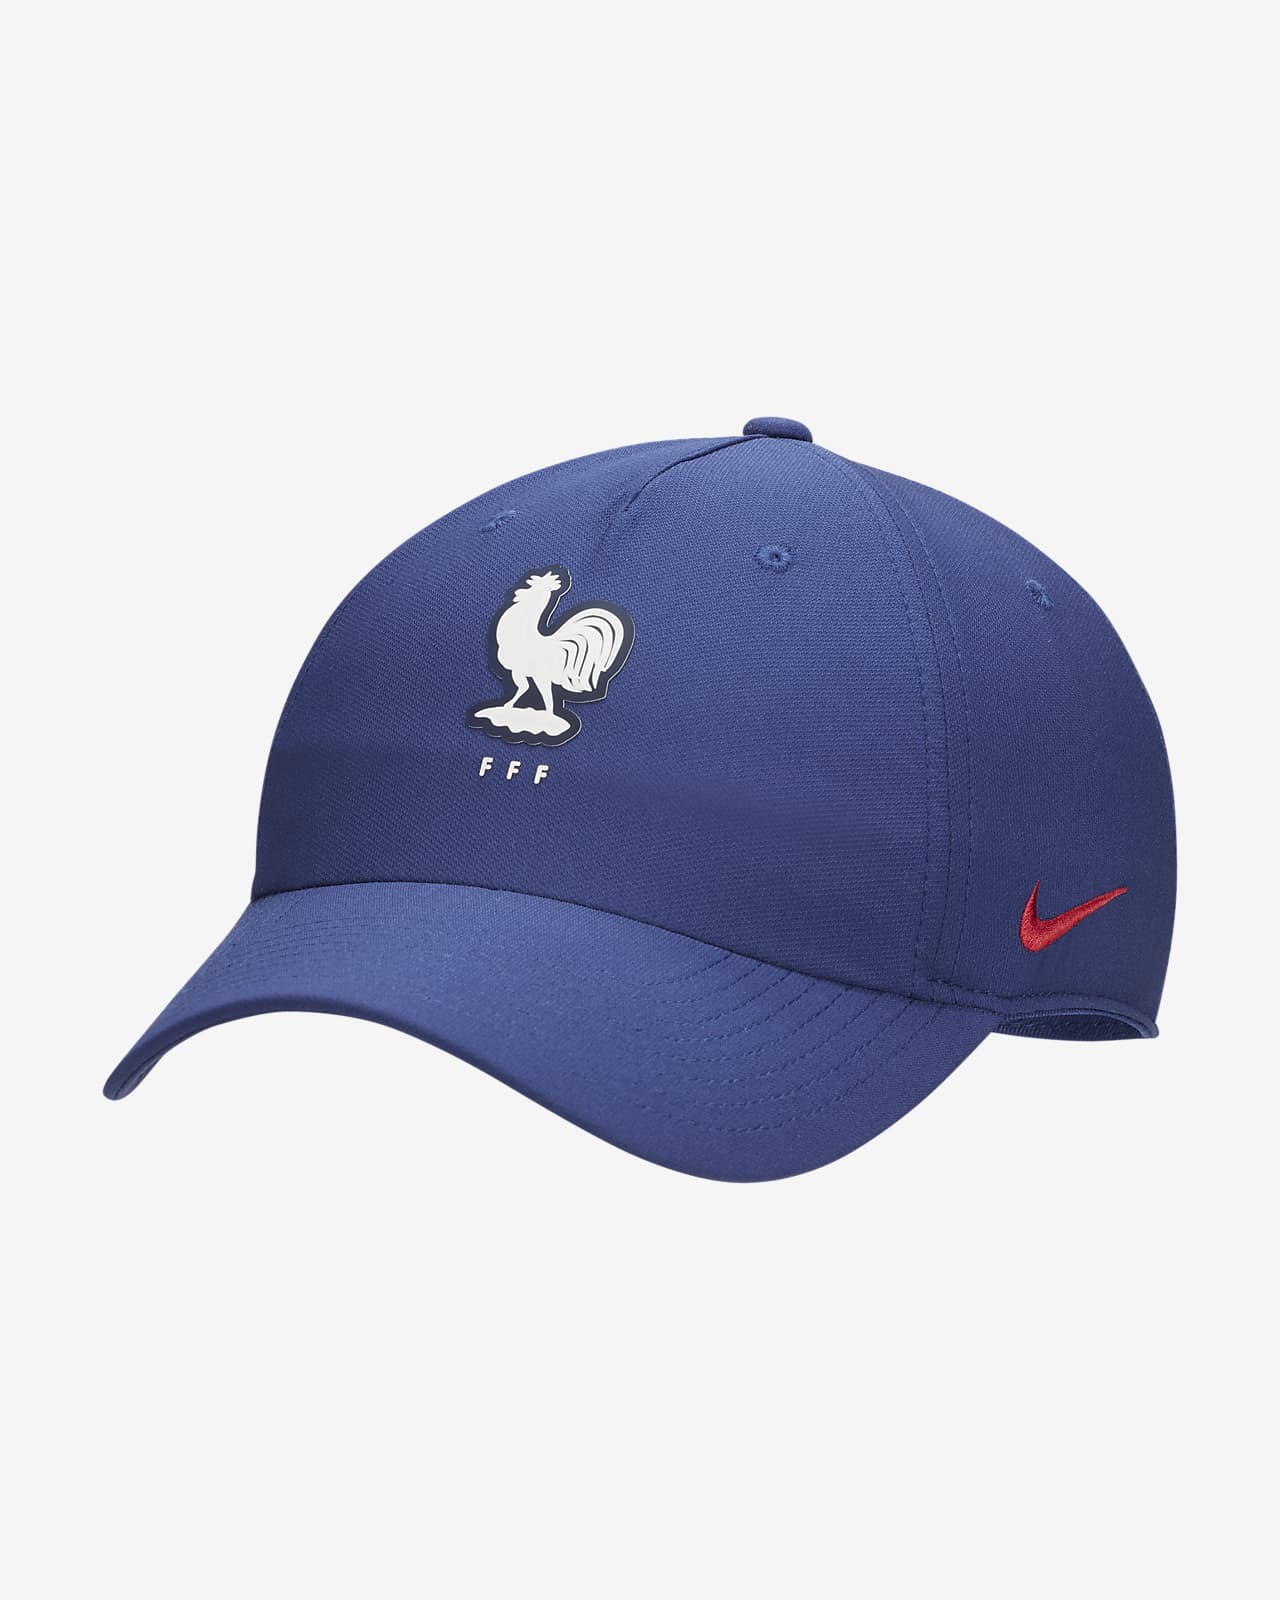 FFF Club 可調式 Nike 帽款